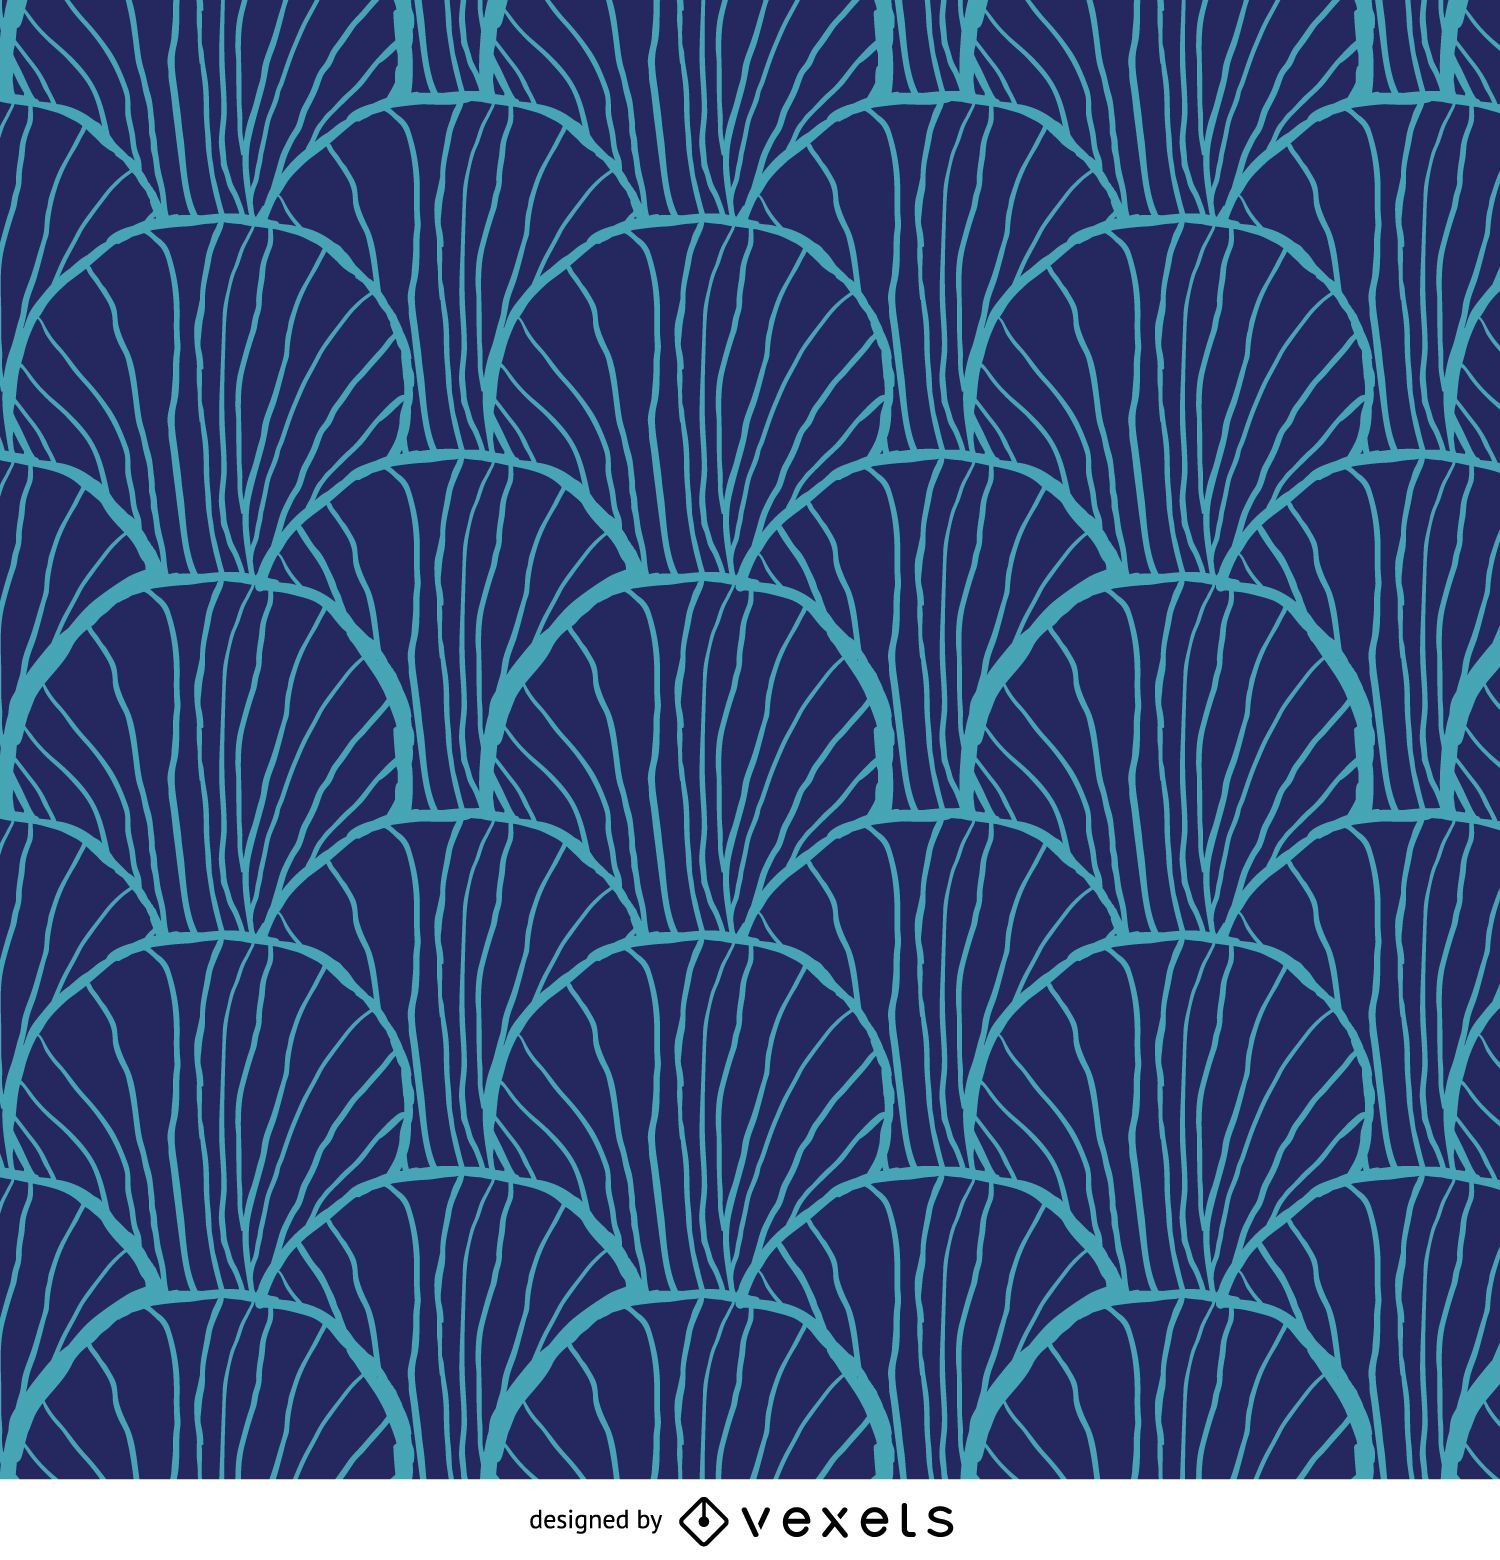 Retro pattern in blue